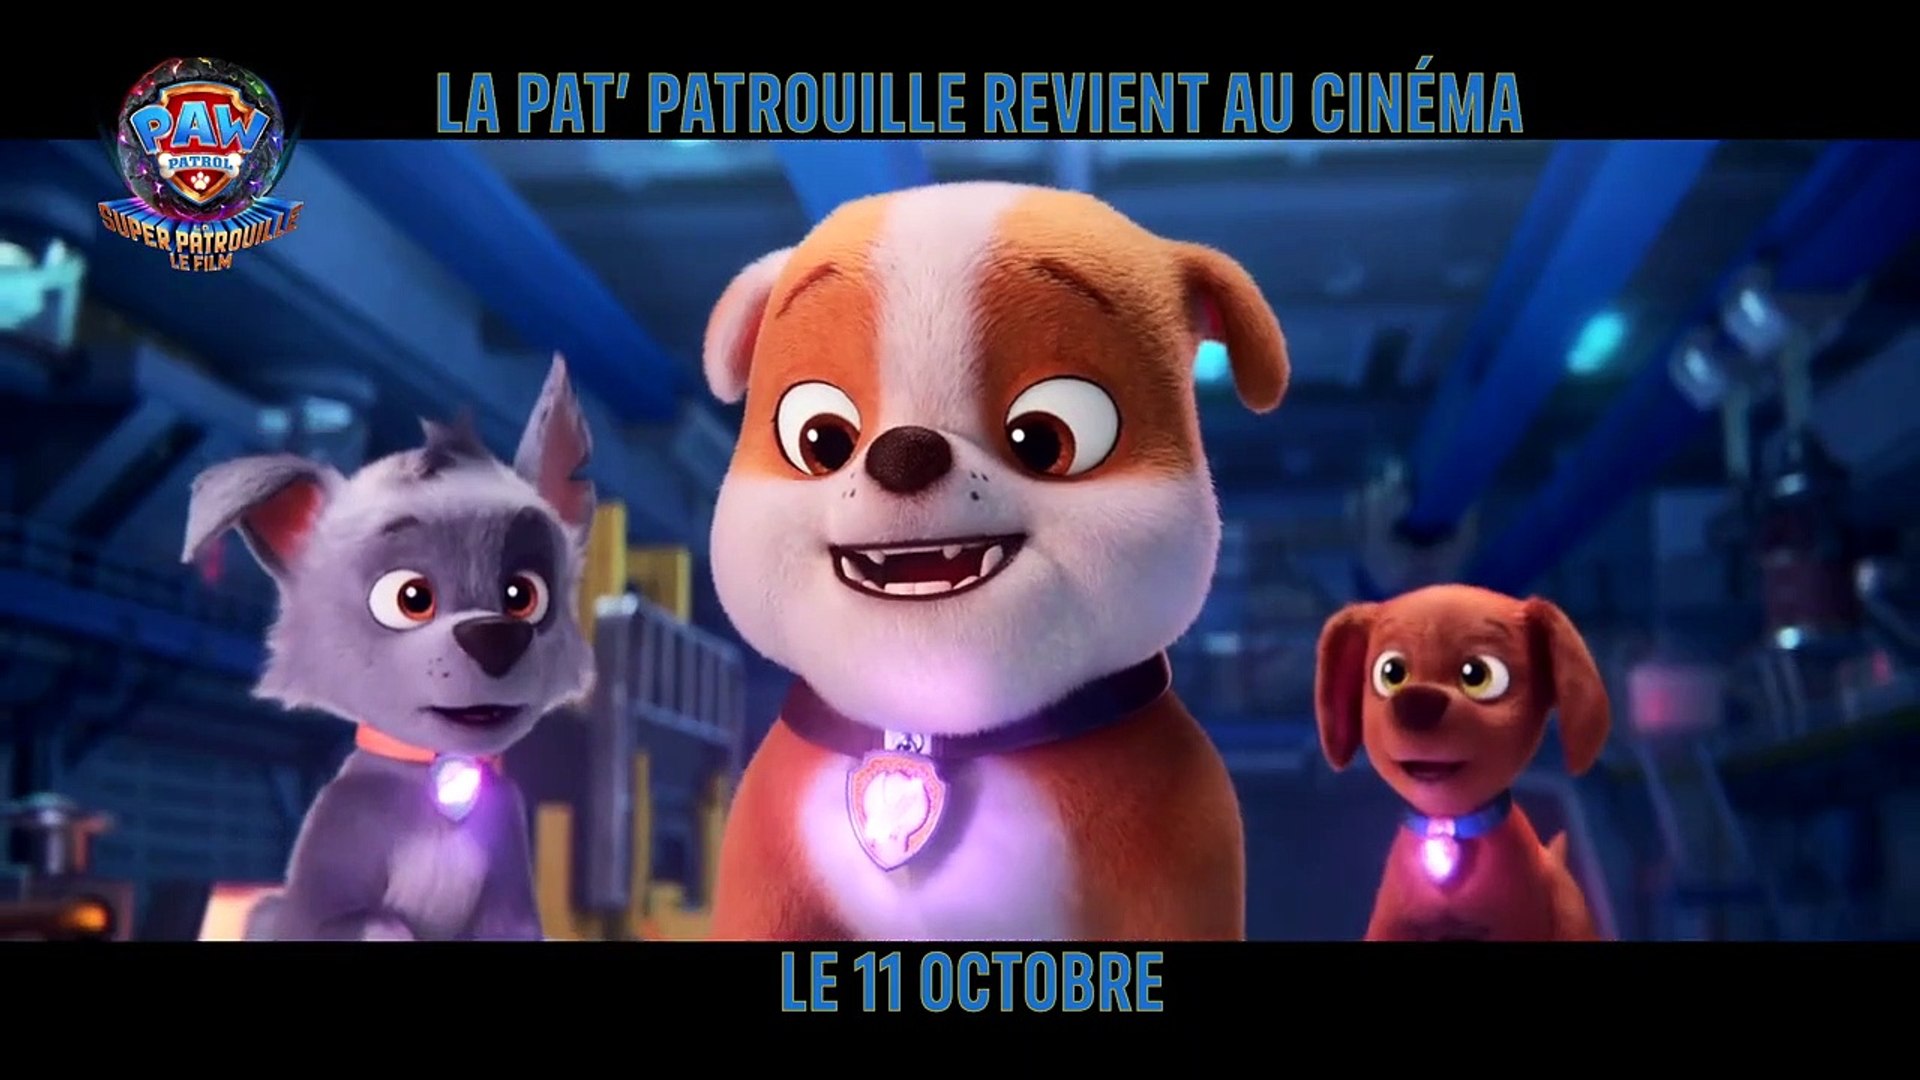 LA PAT' PATROUILLE : LA SUPER PATROUILLE – LE FILM est #1 pour un deuxième  week-end consécutif 